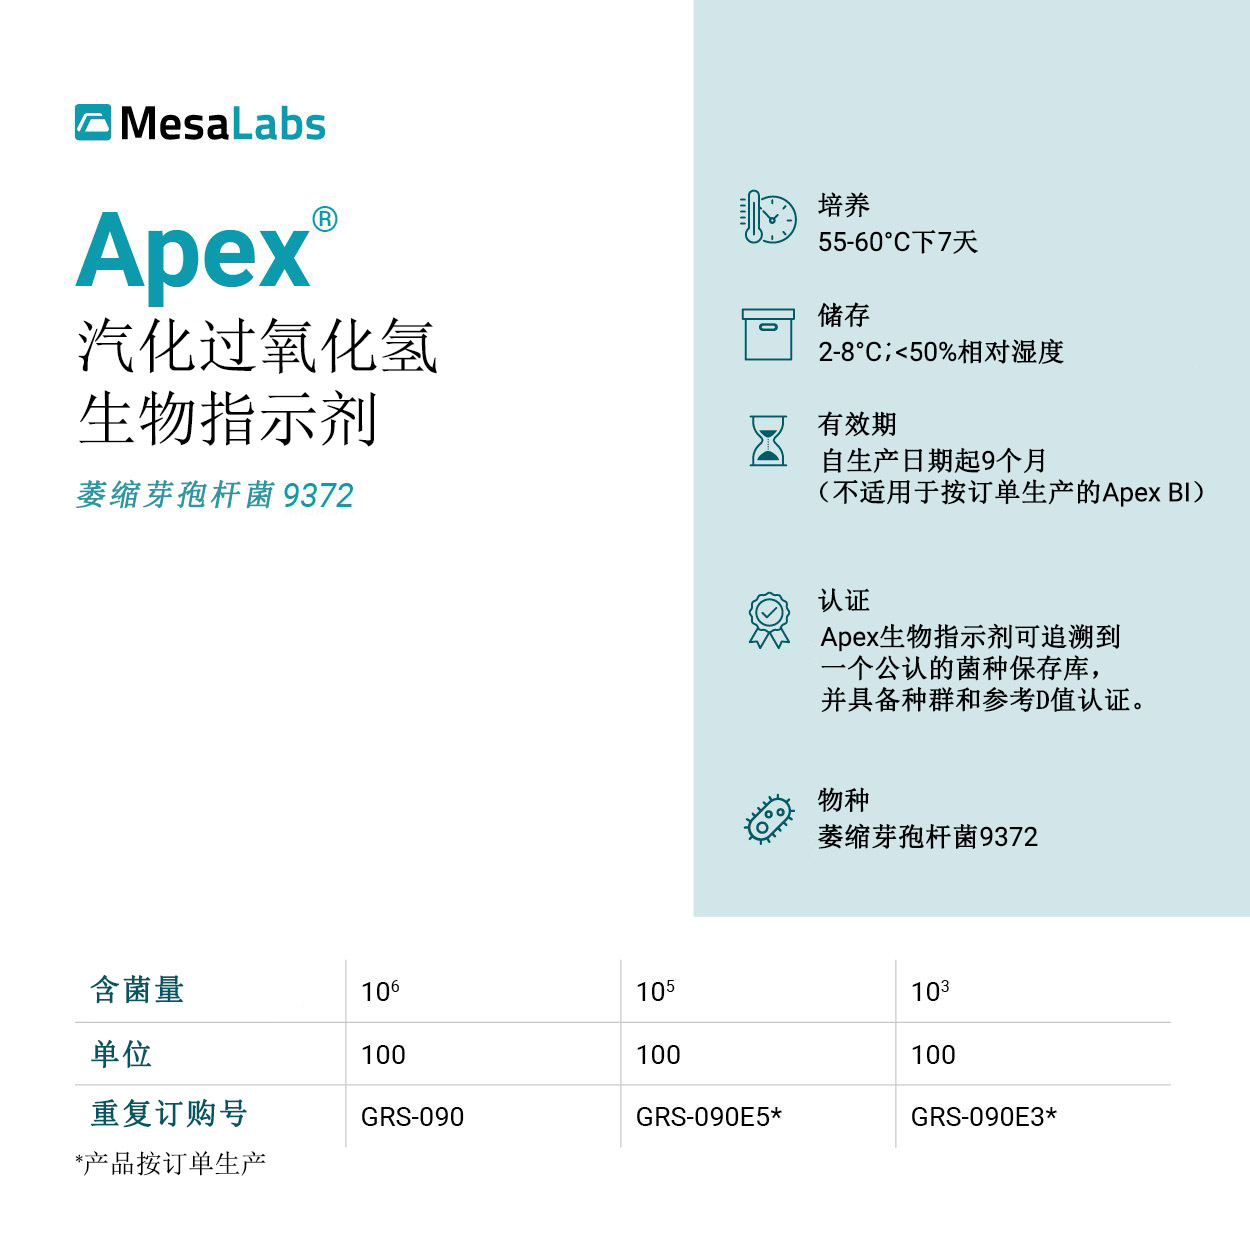 23-网站-Apex-技术规范卡-萎缩芽胞杆菌-9372-草稿01